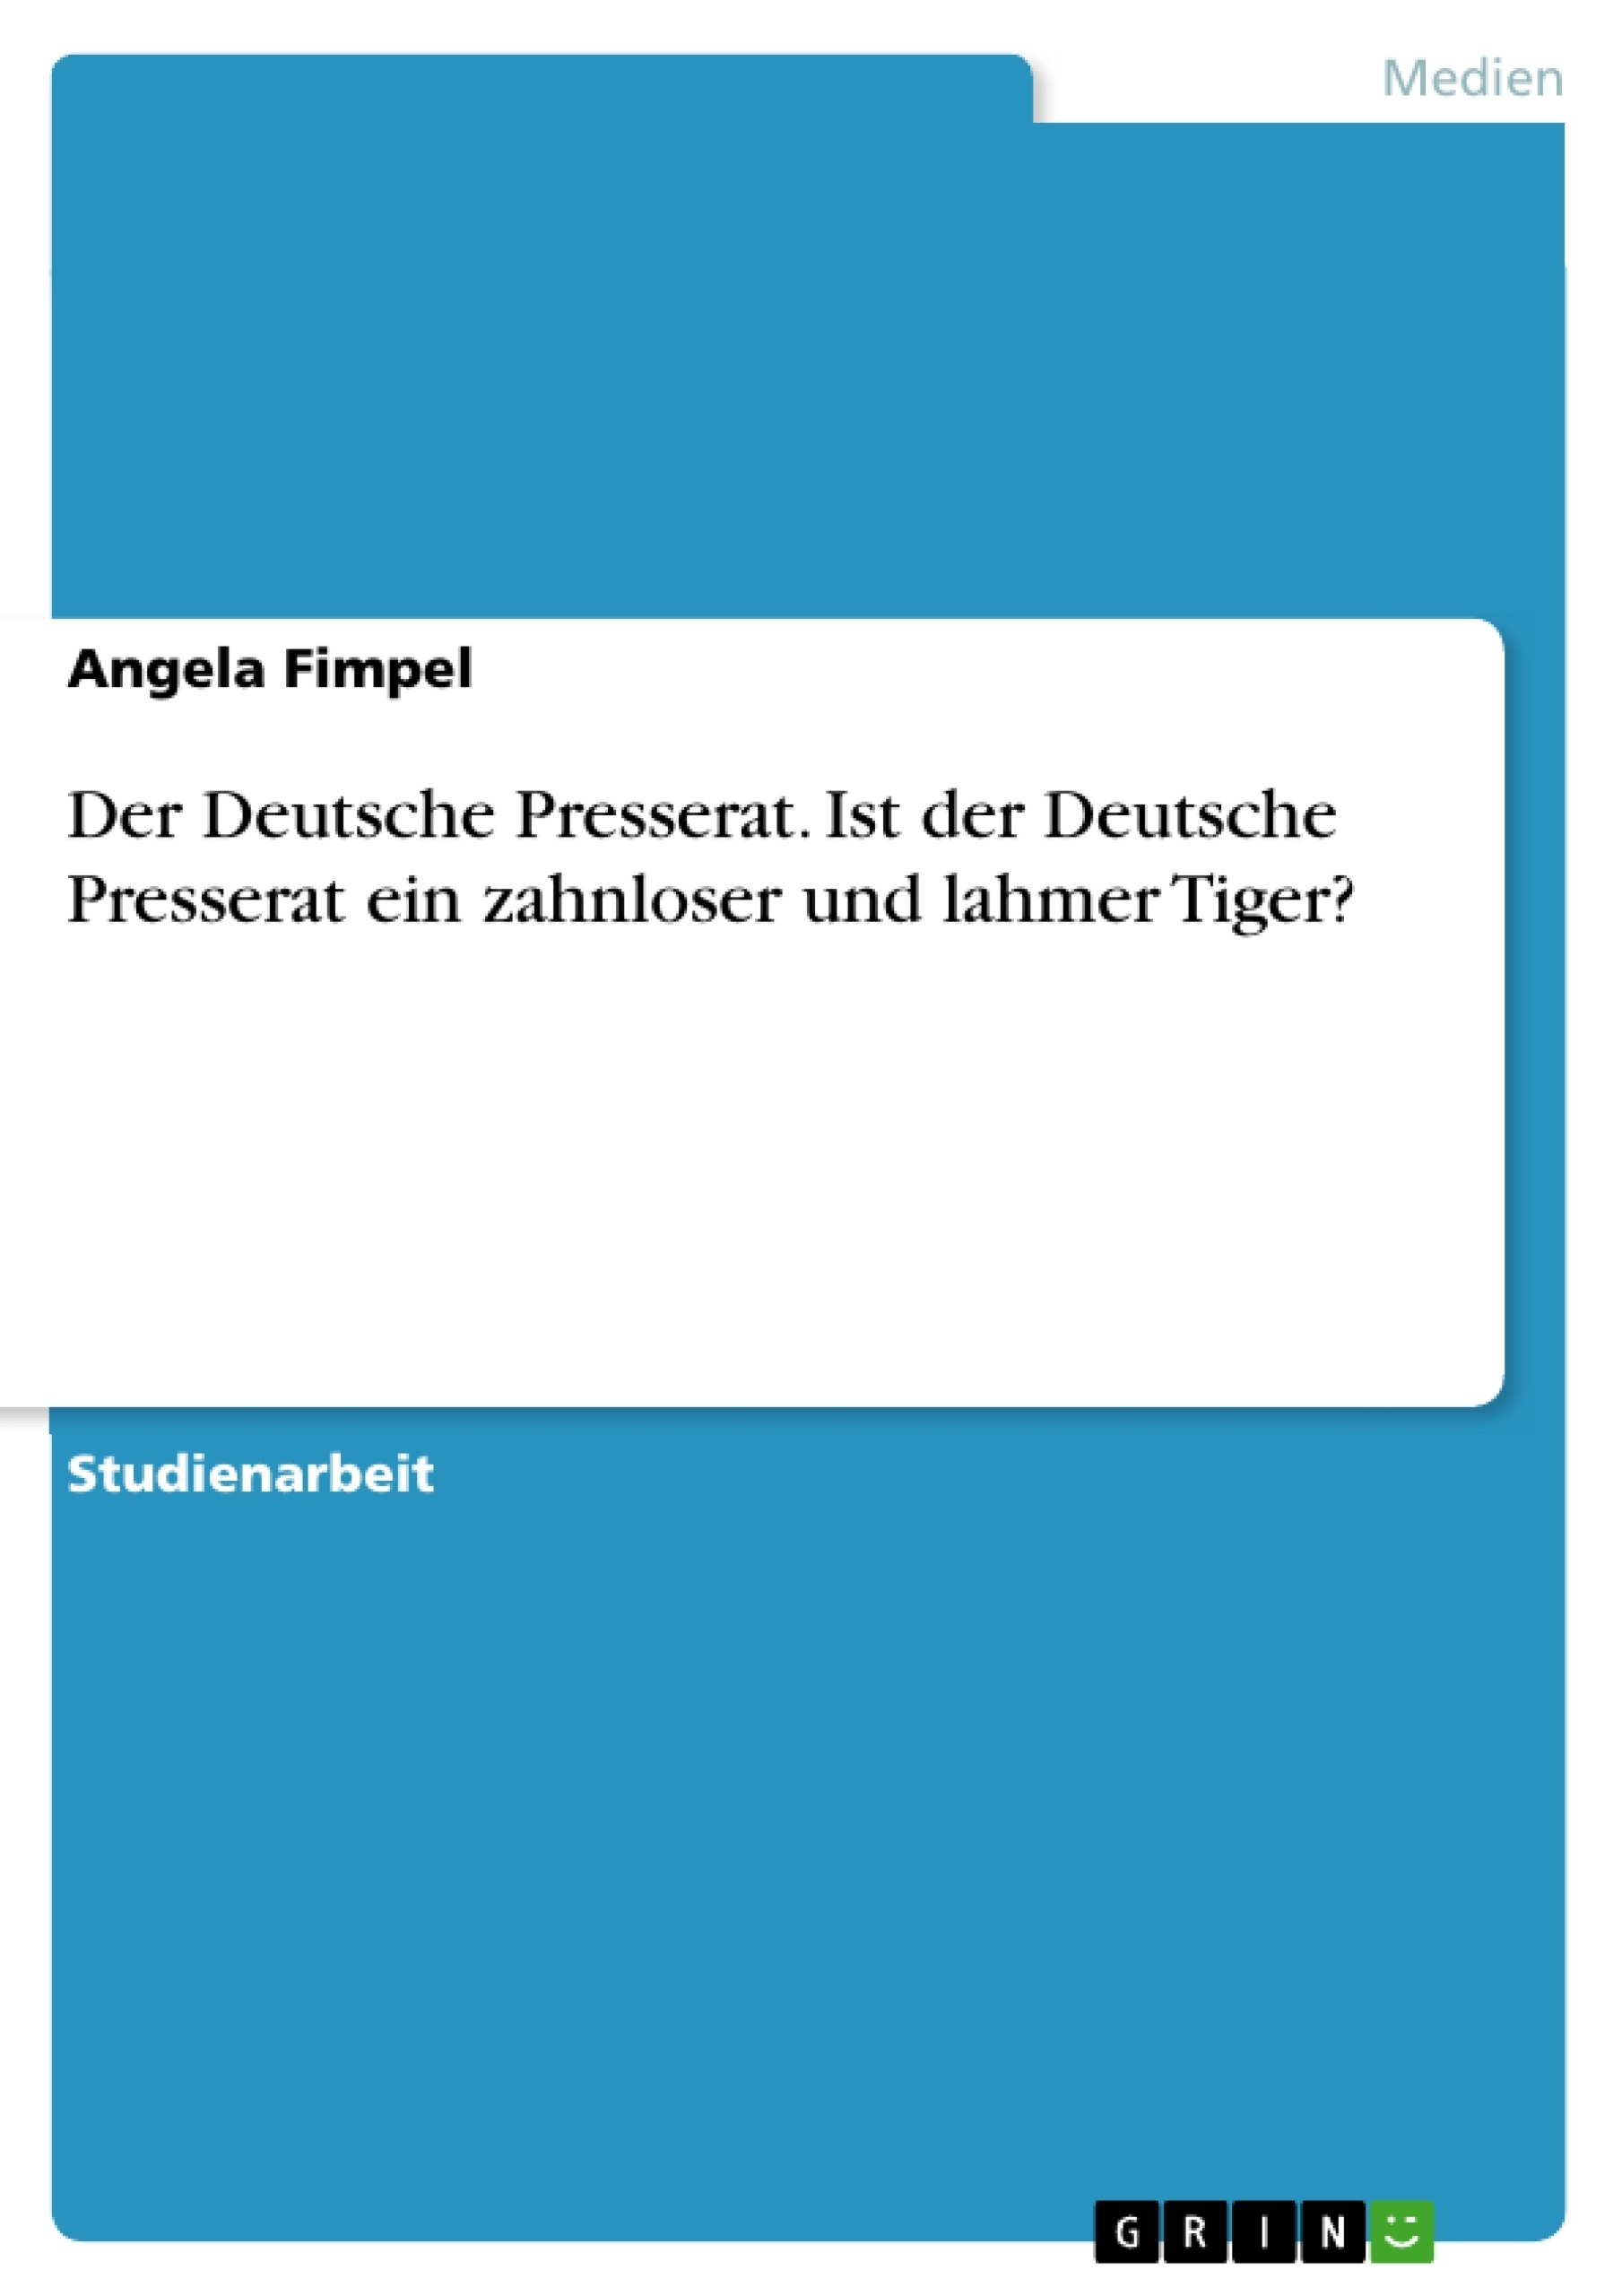 Título: Der Deutsche Presserat. Ist der Deutsche Presserat ein zahnloser und lahmer Tiger?